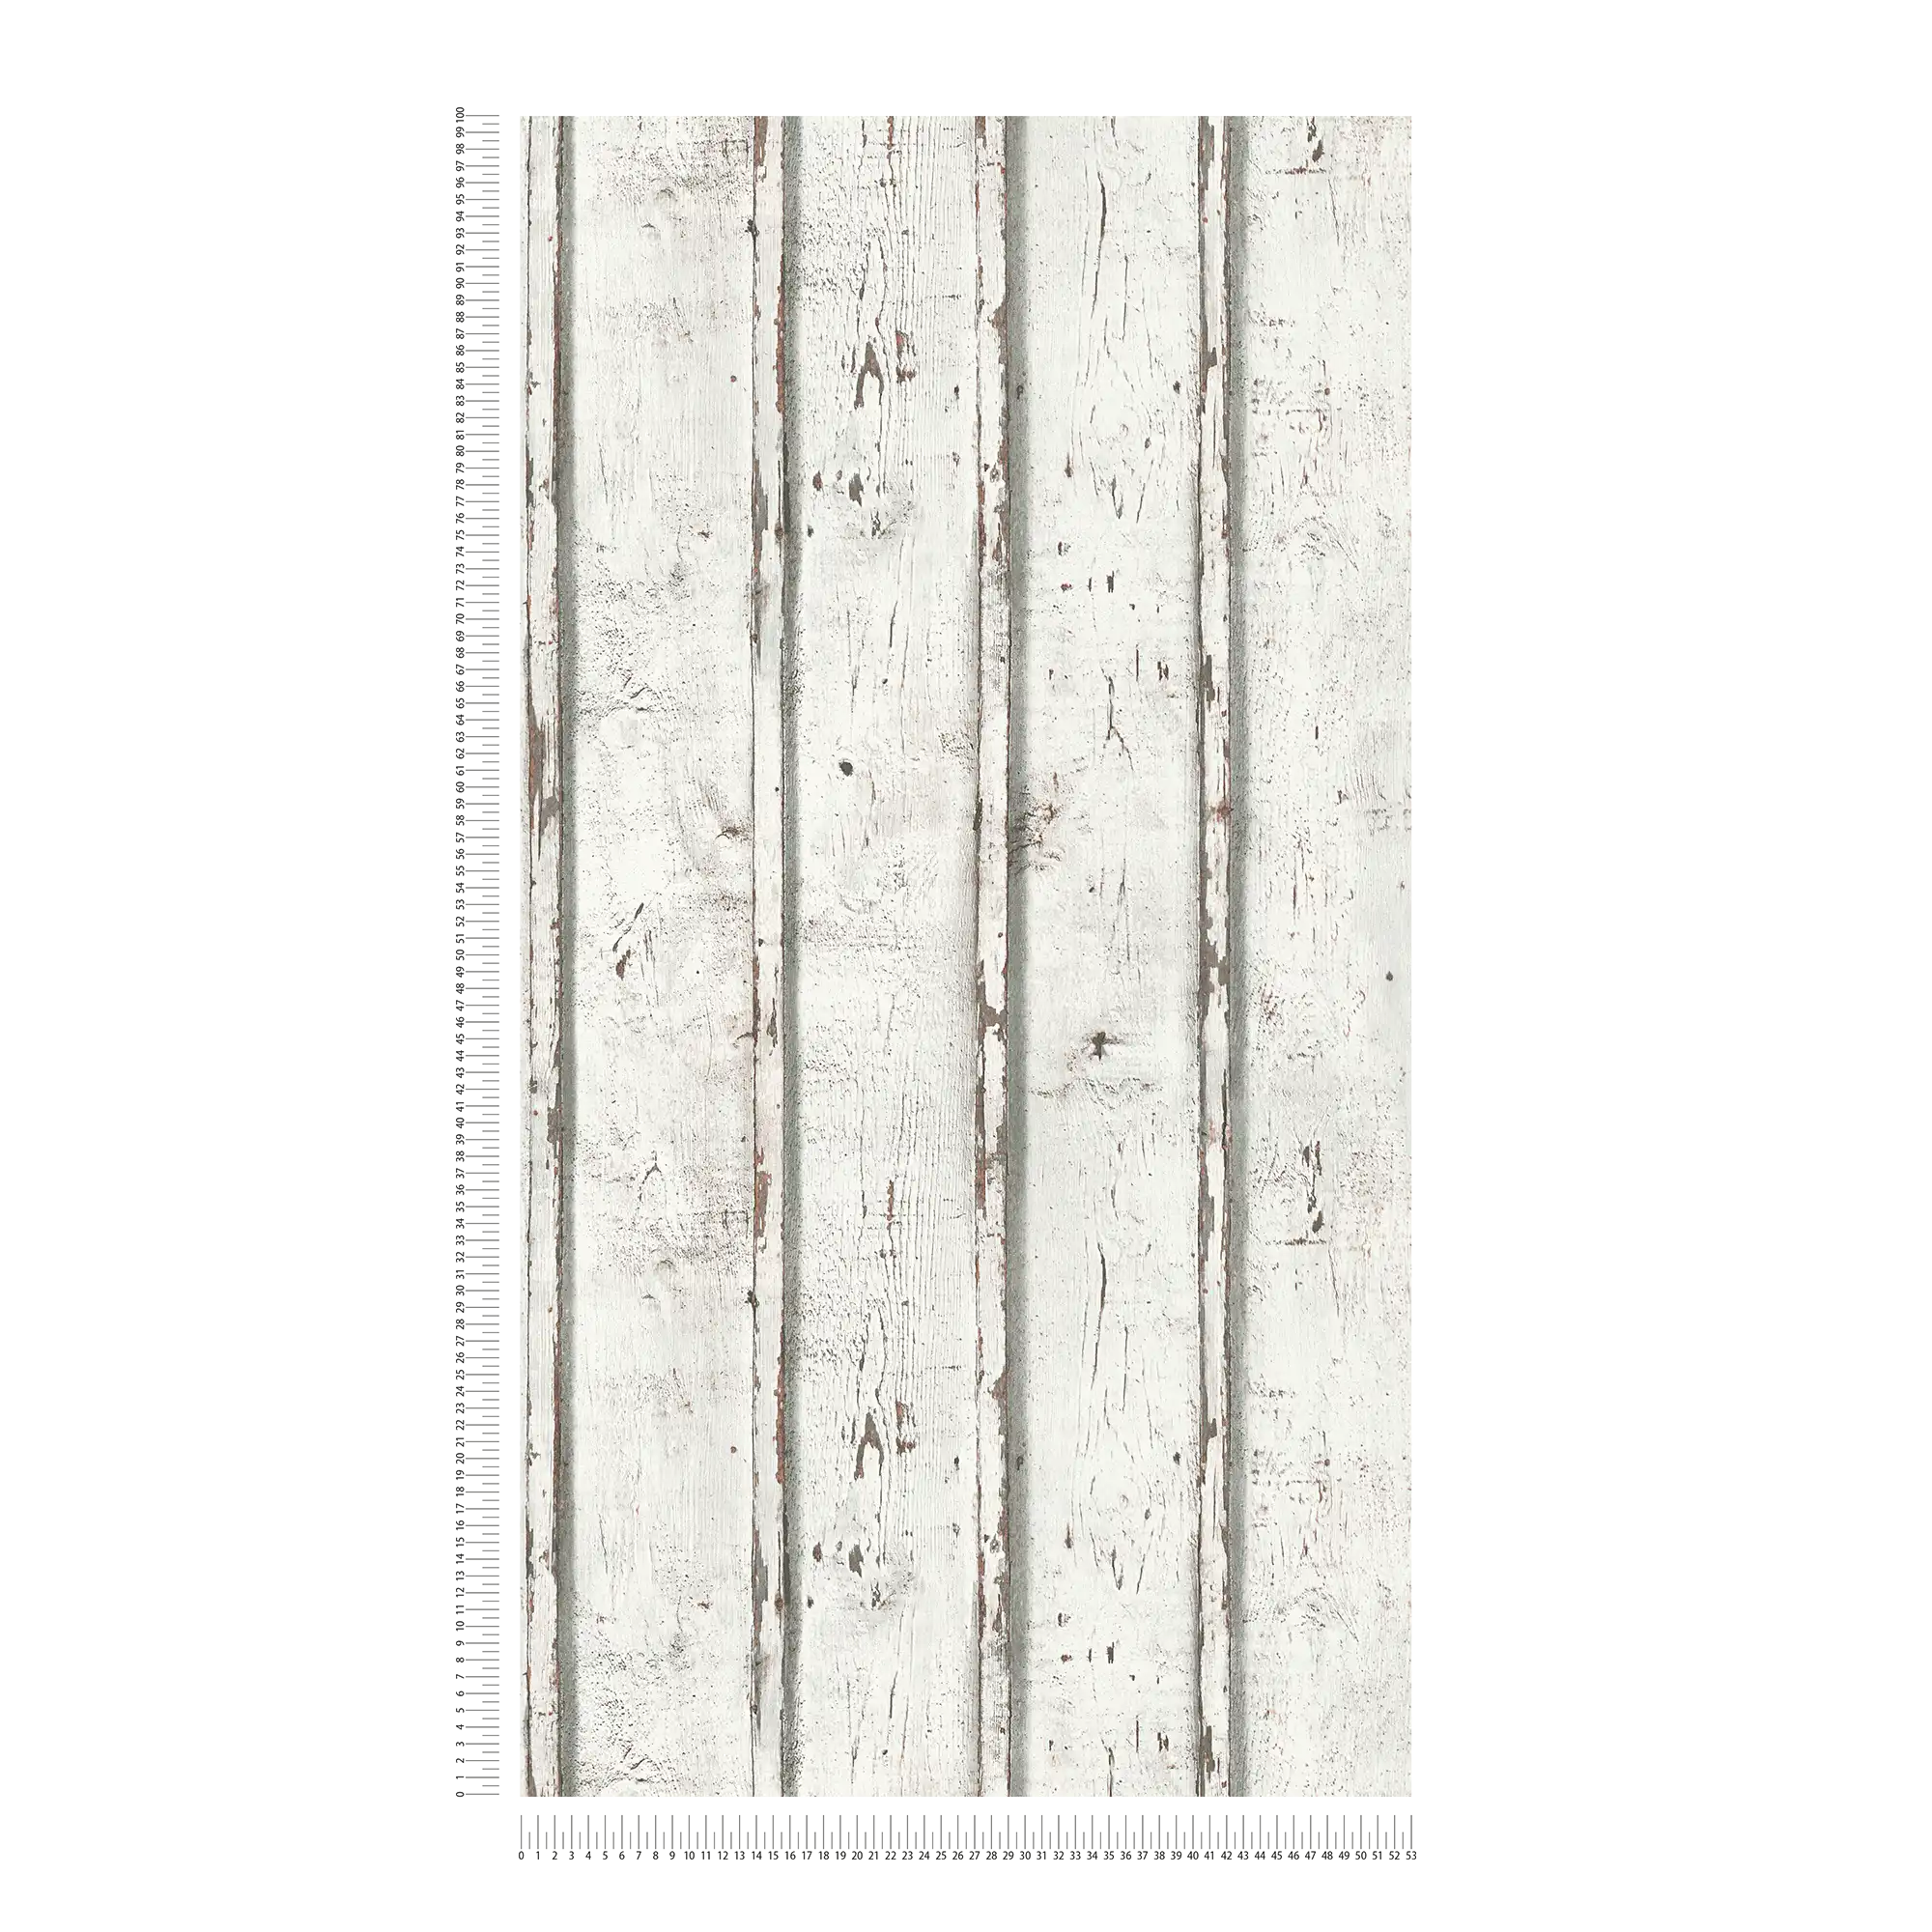             Holztapete im Used-Look mit verwitterten Holzbrettern – Weiß, Creme, Grau
        